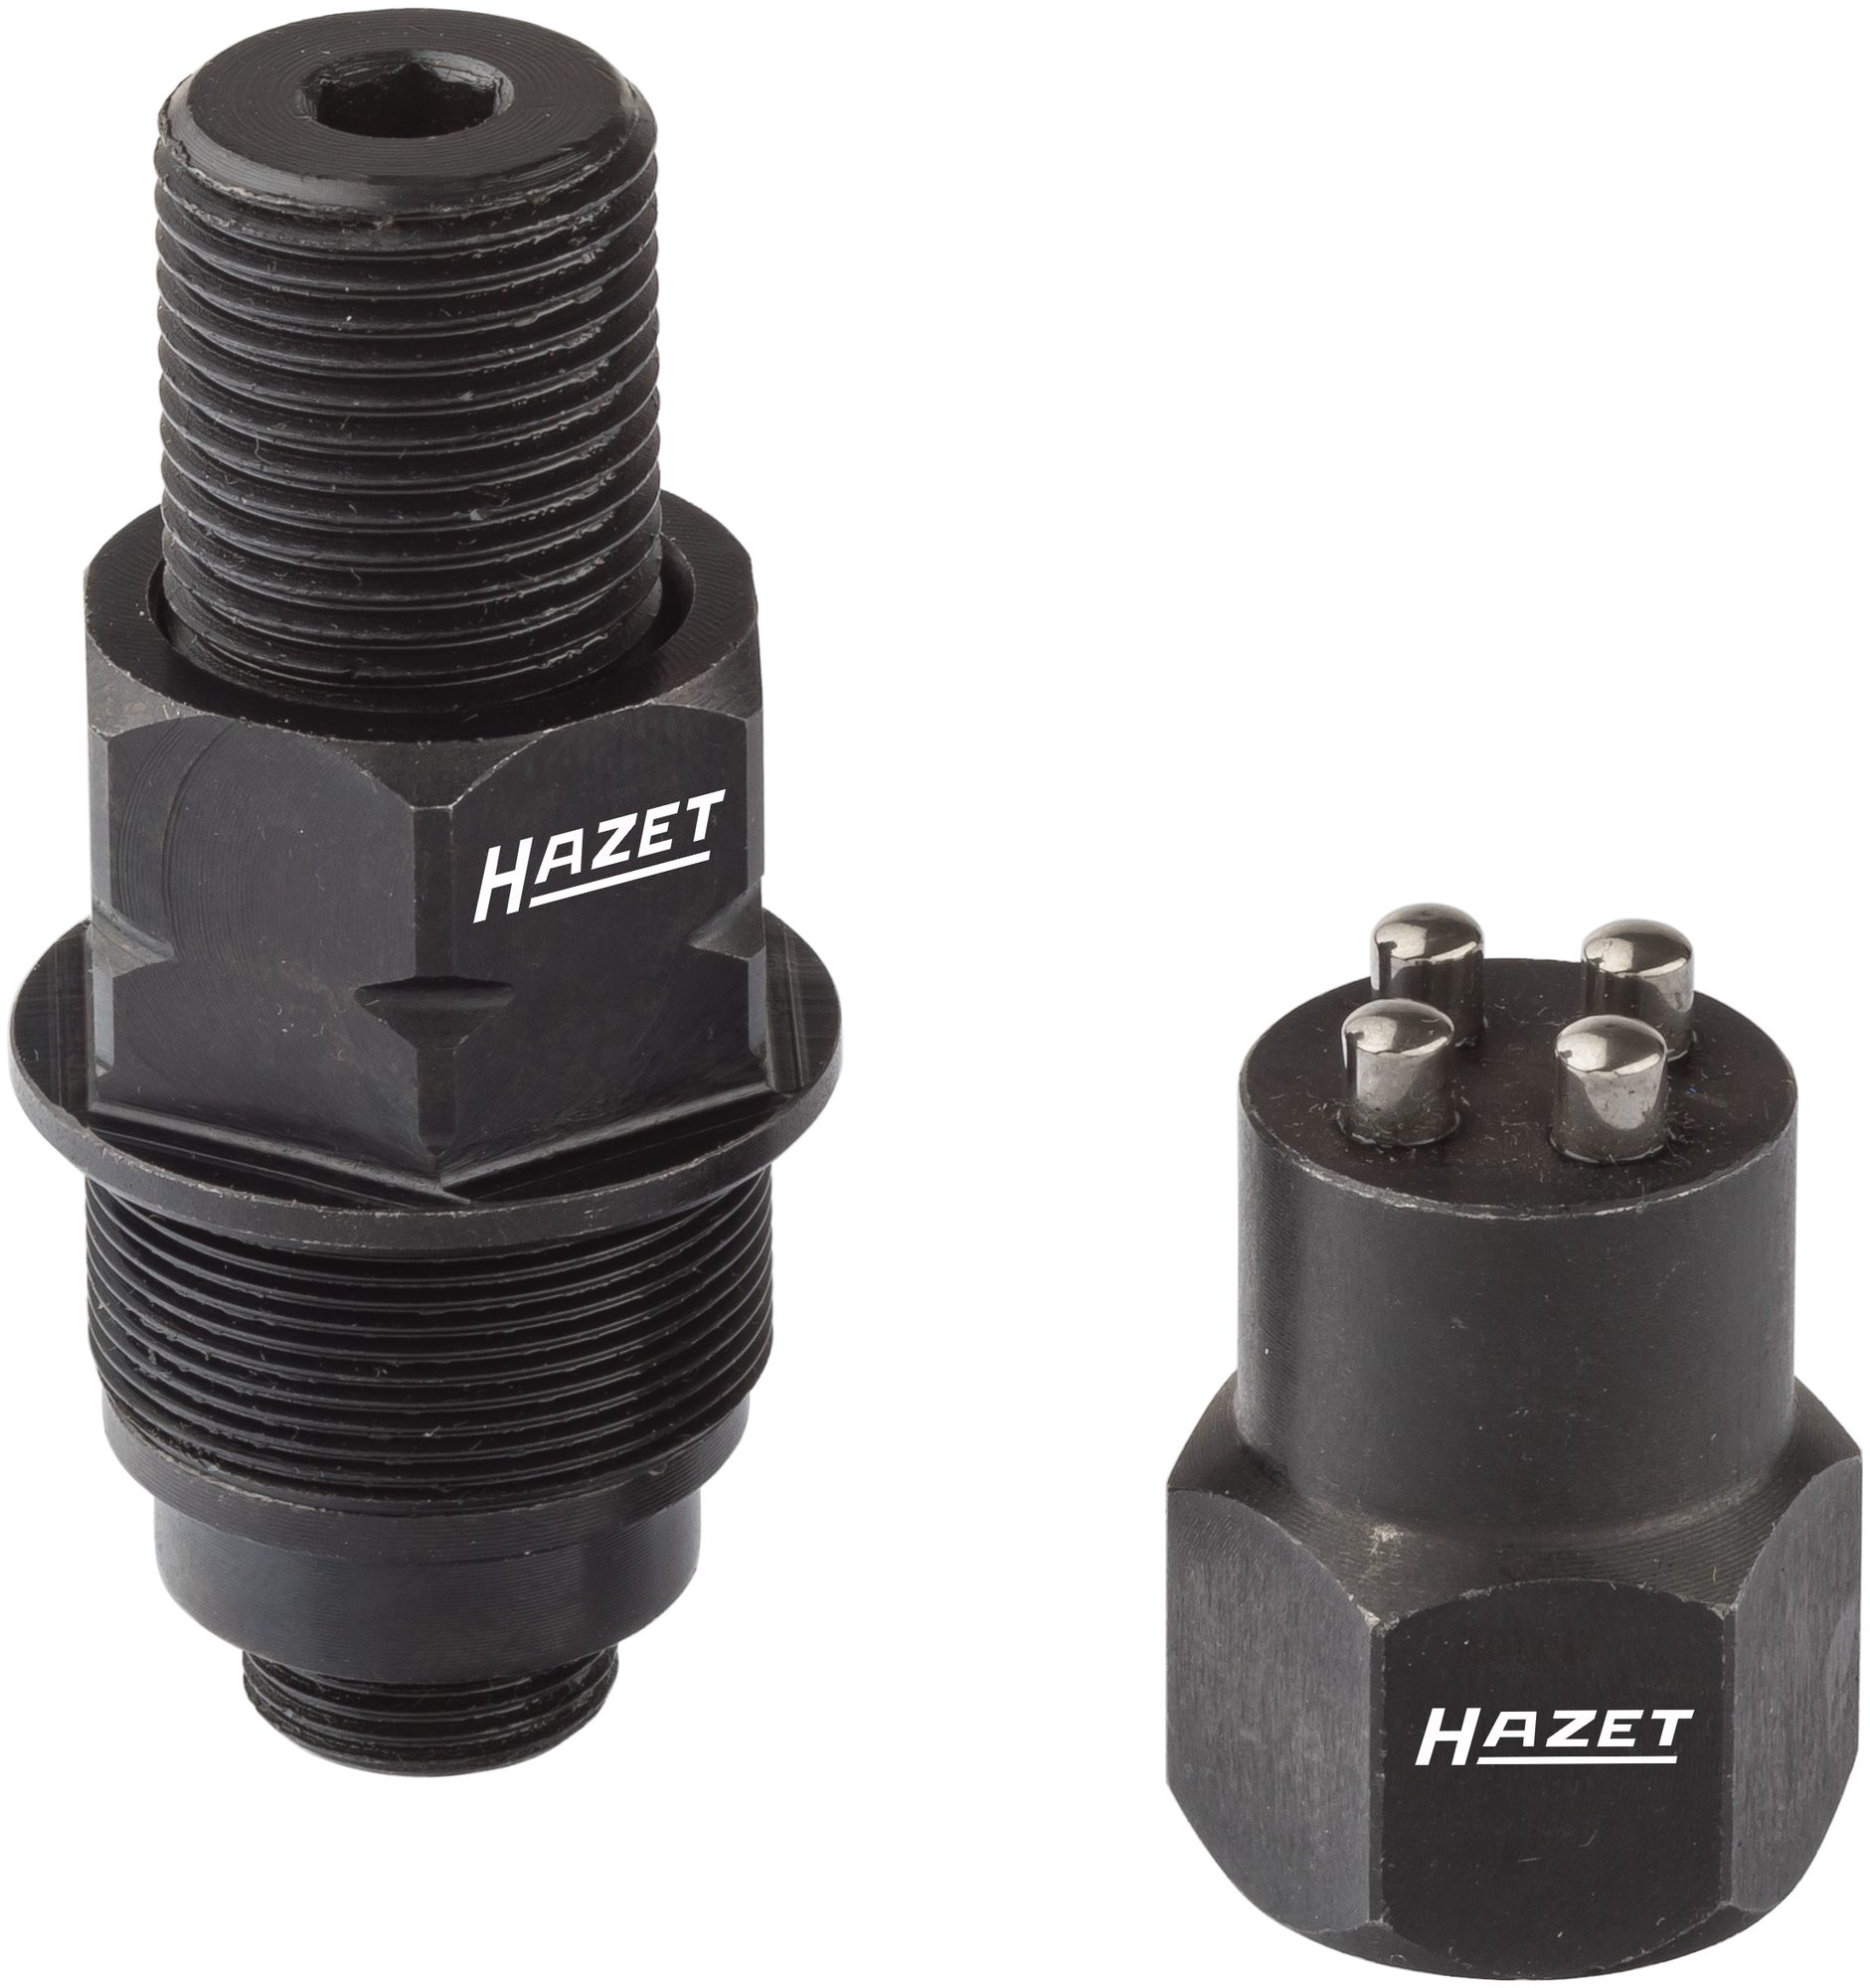 HAZET Injektor Steckschlüssel-Einsatz Siemens/Bosch 4798 diverse Größen AUSWAHL 